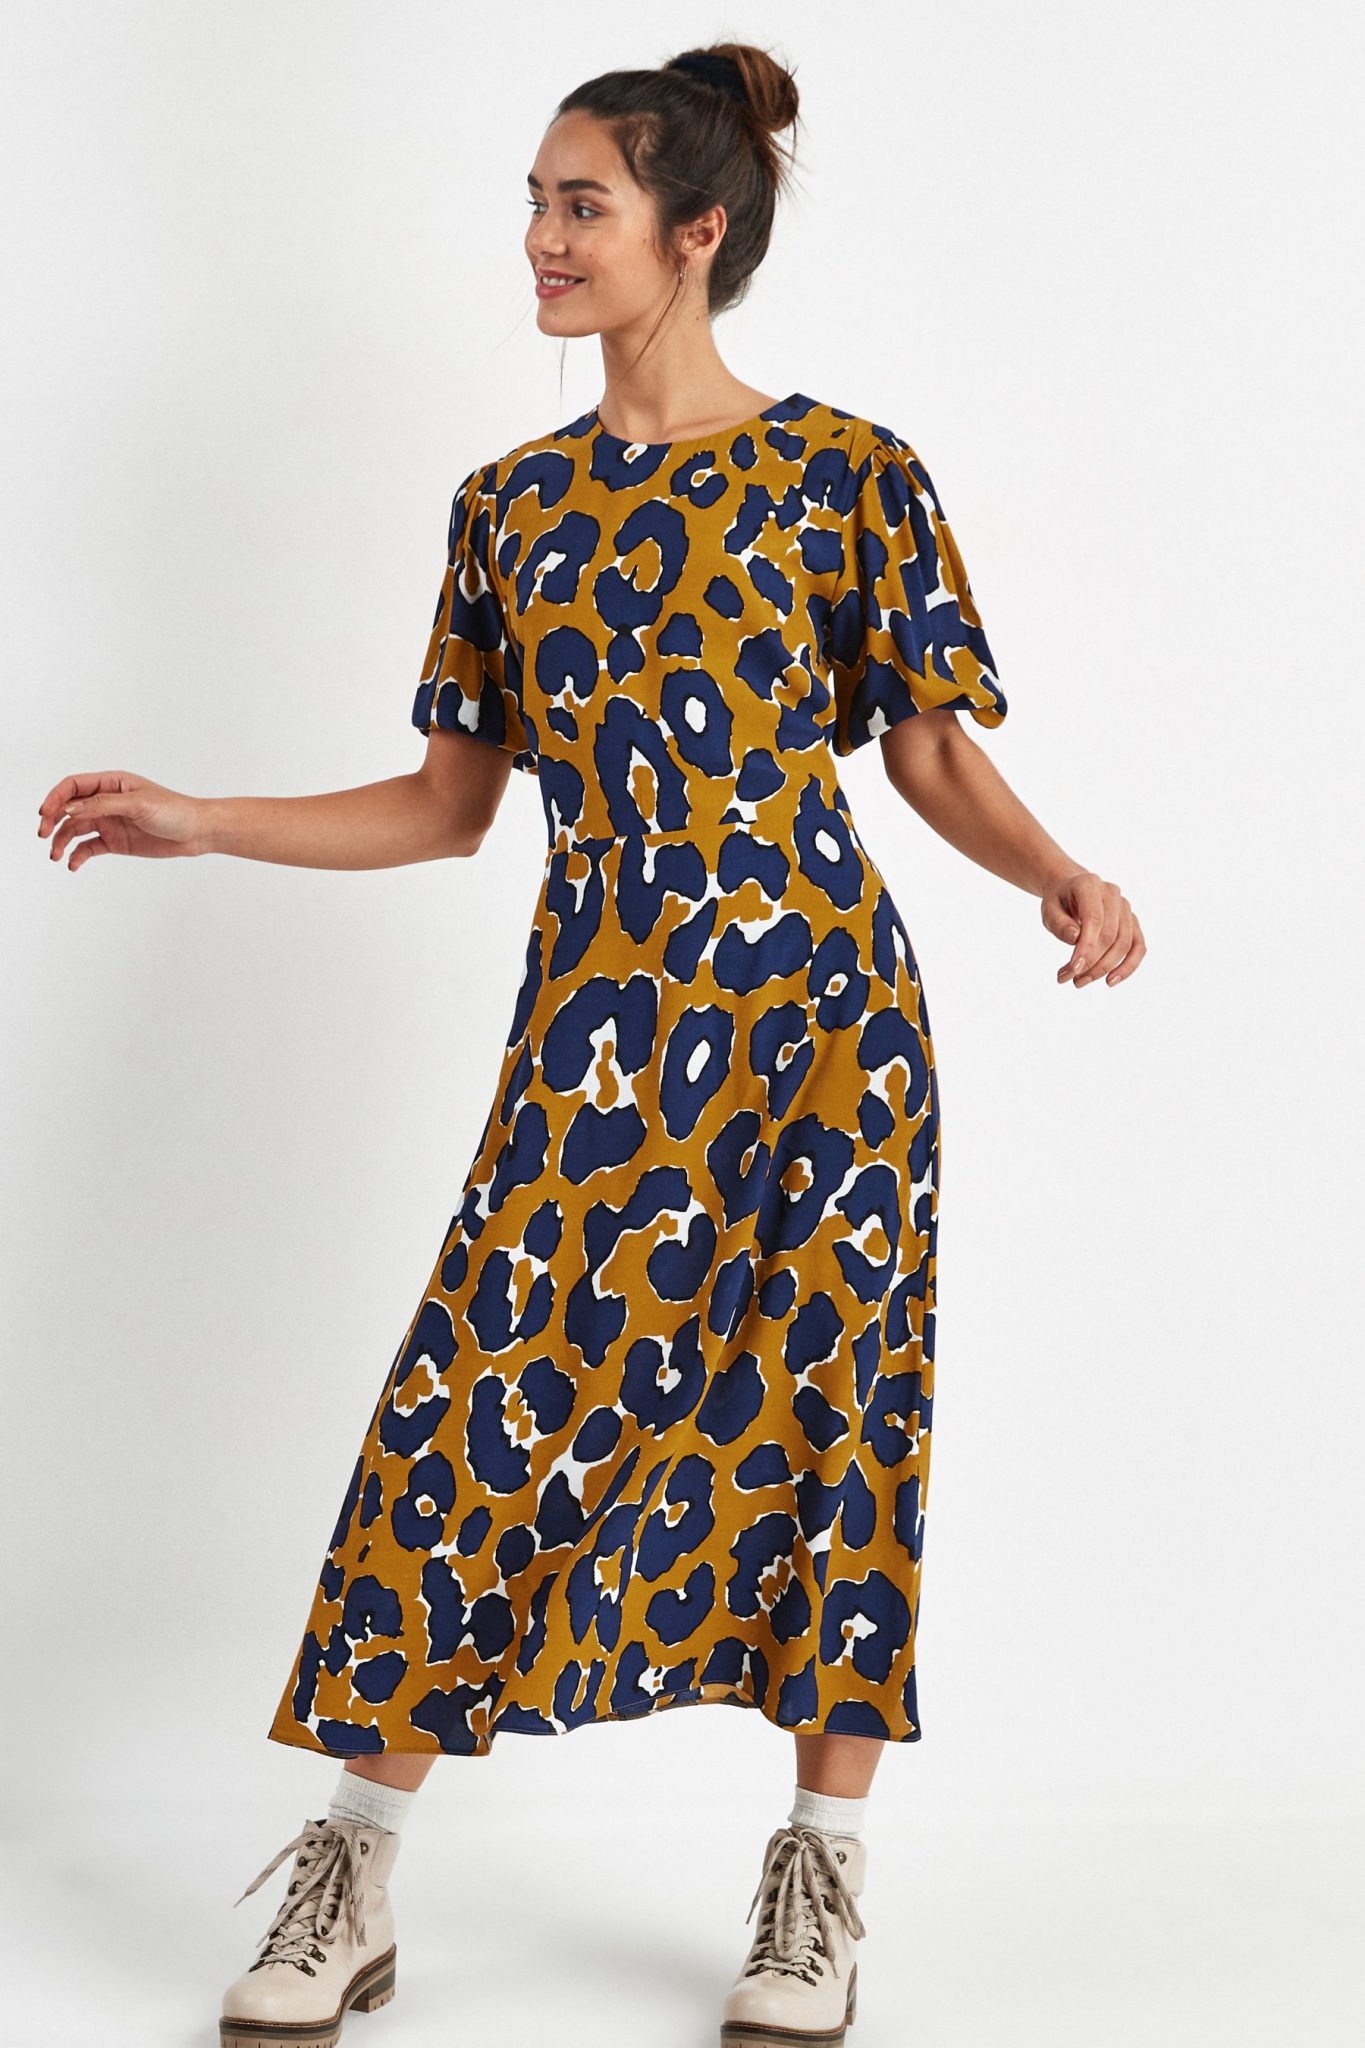 next leopard dress